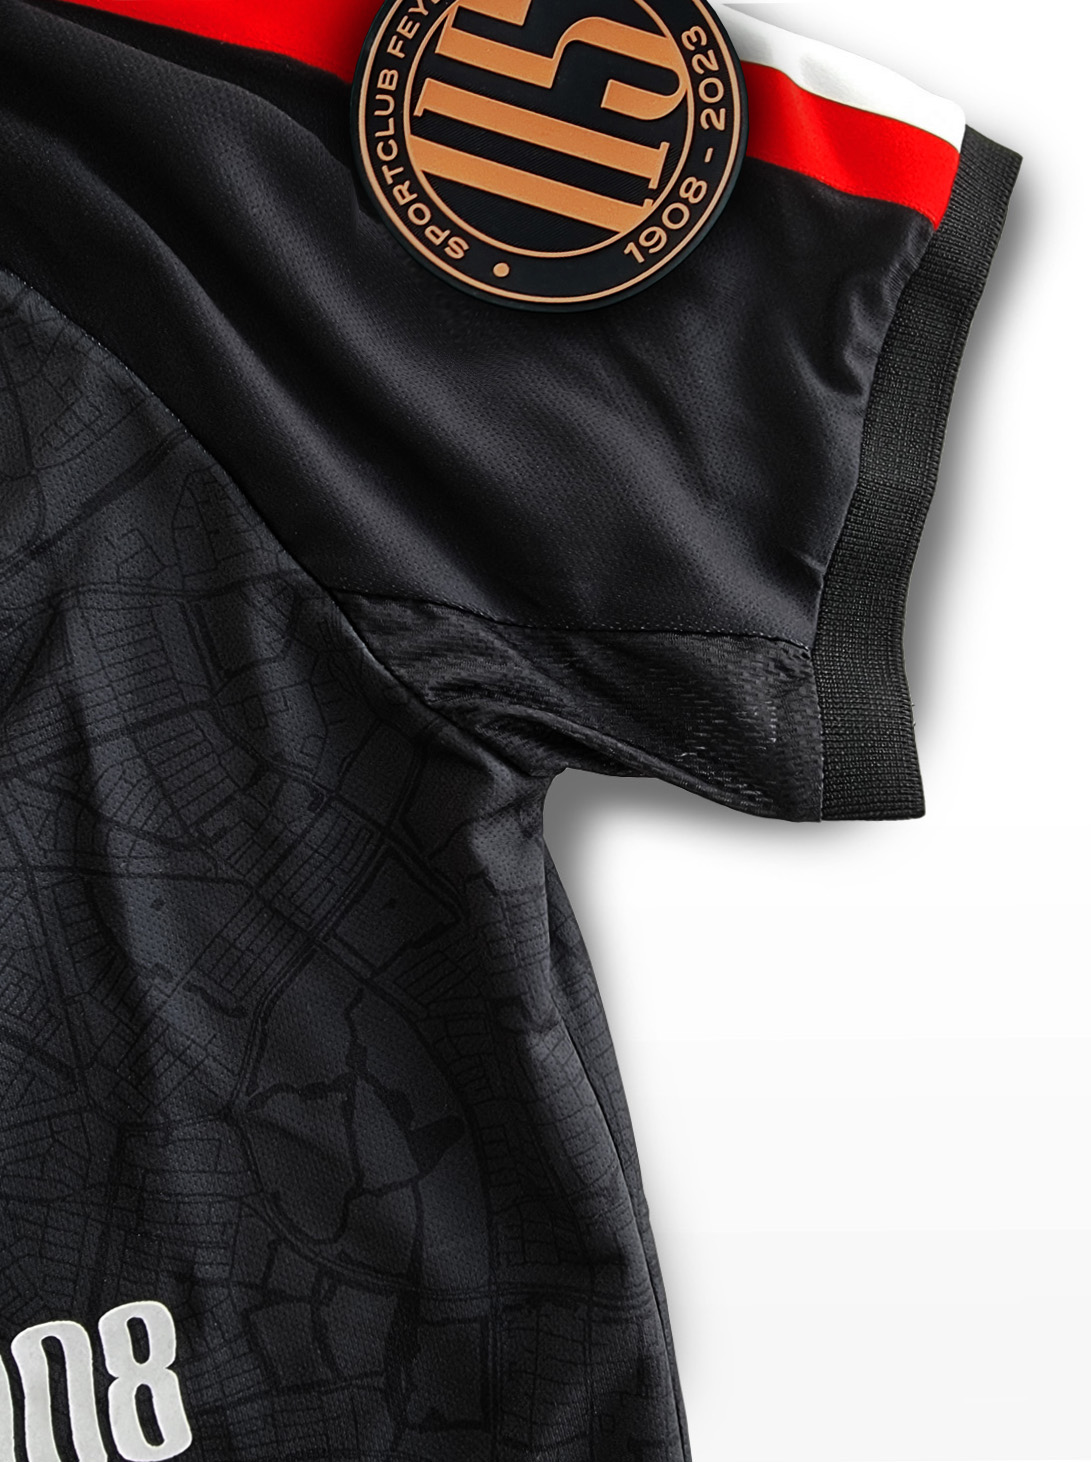 FRFC Sportshirt 2.0, Thuisshirt - 2022 - 2024 - Mouw Detail (met sponsor) - 115 jaar